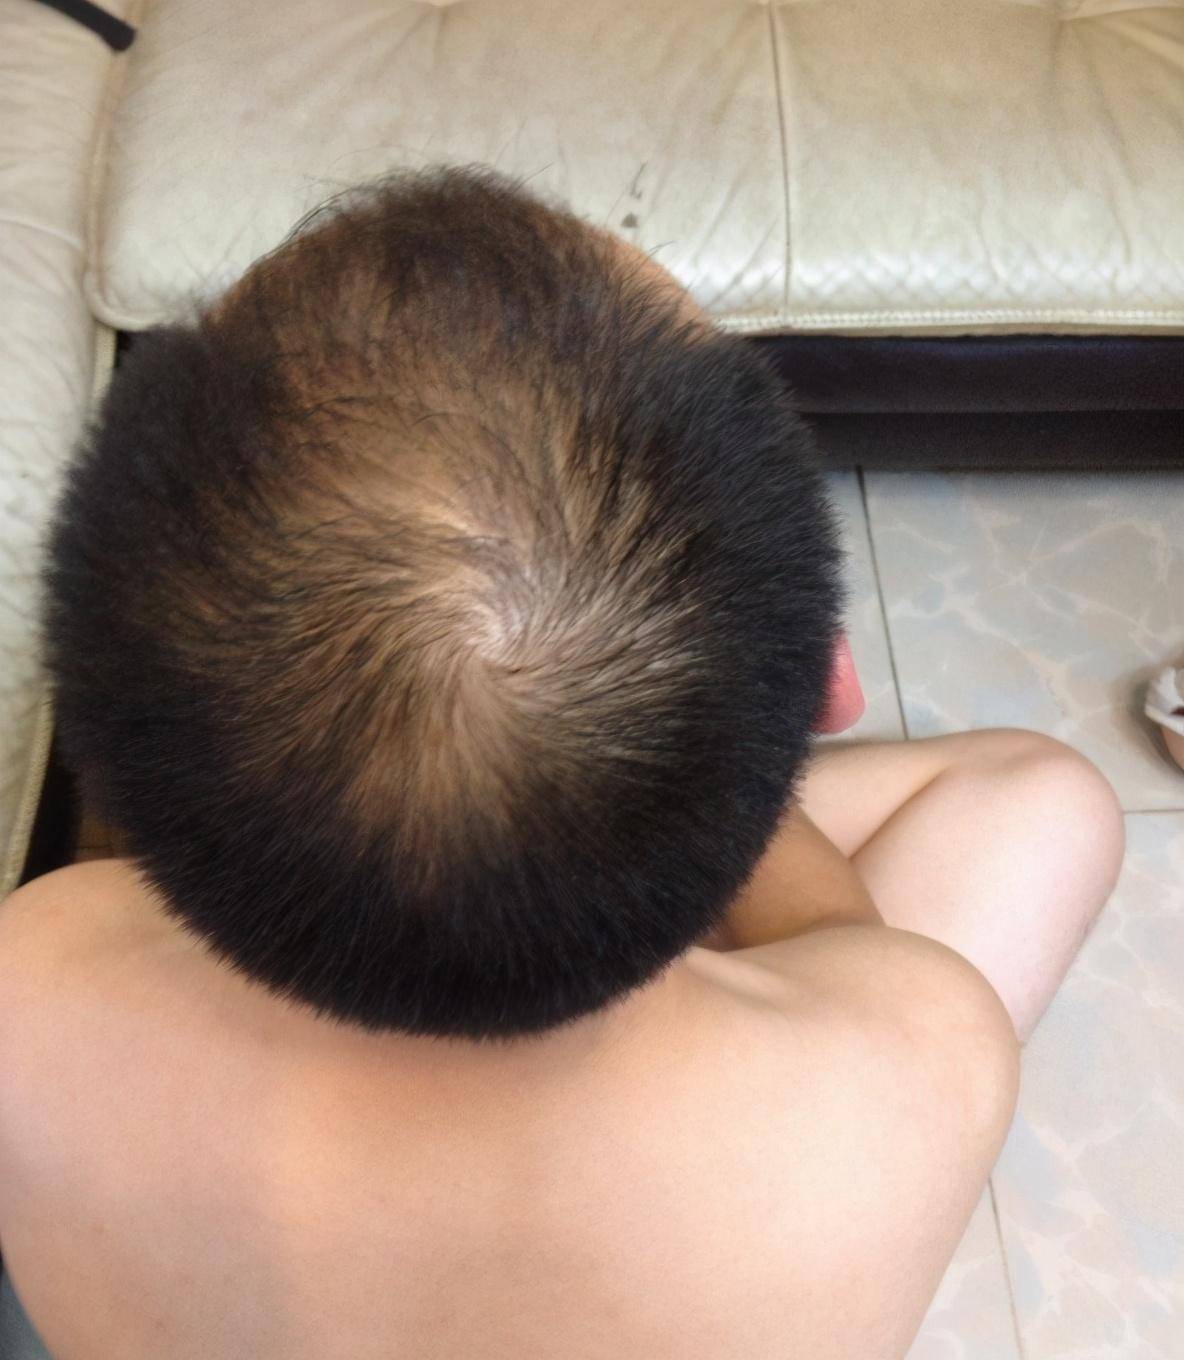 26岁男子花3万治疗脱发失败,如今发际线明显后移,头顶快秃了